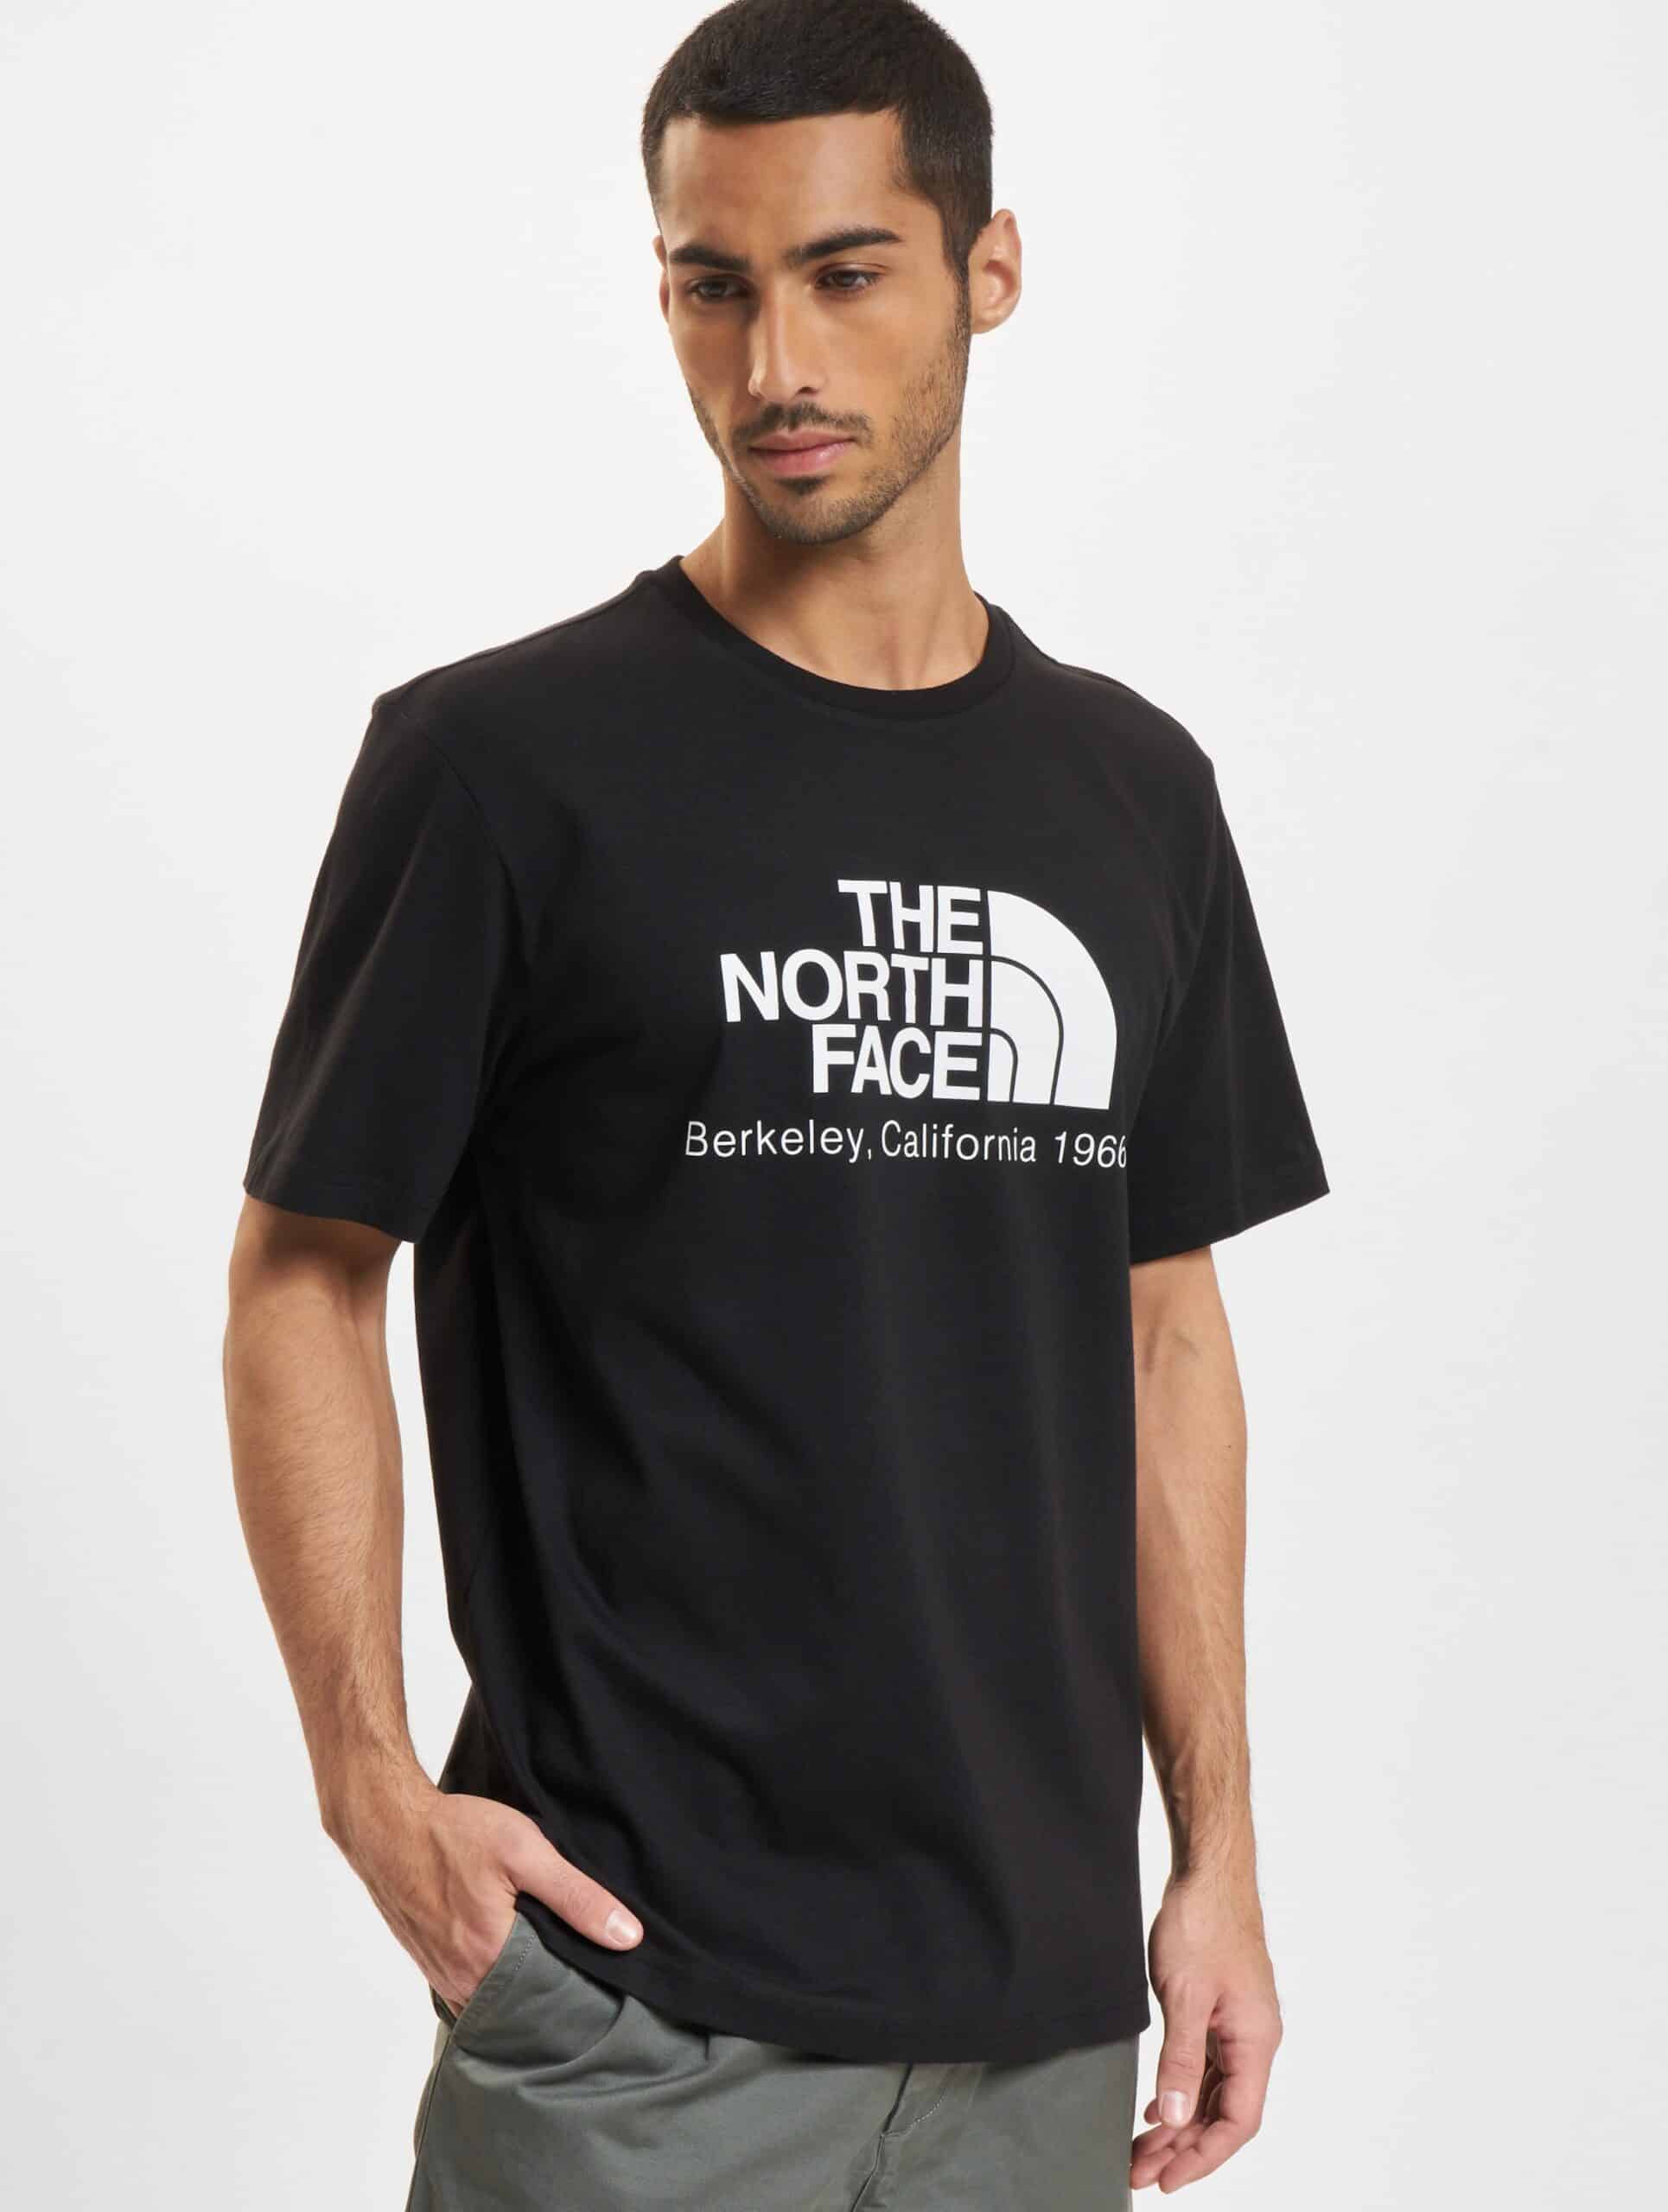 The North Face Berkeley California T-Shirts Männer,Unisex op kleur zwart, Maat XXL